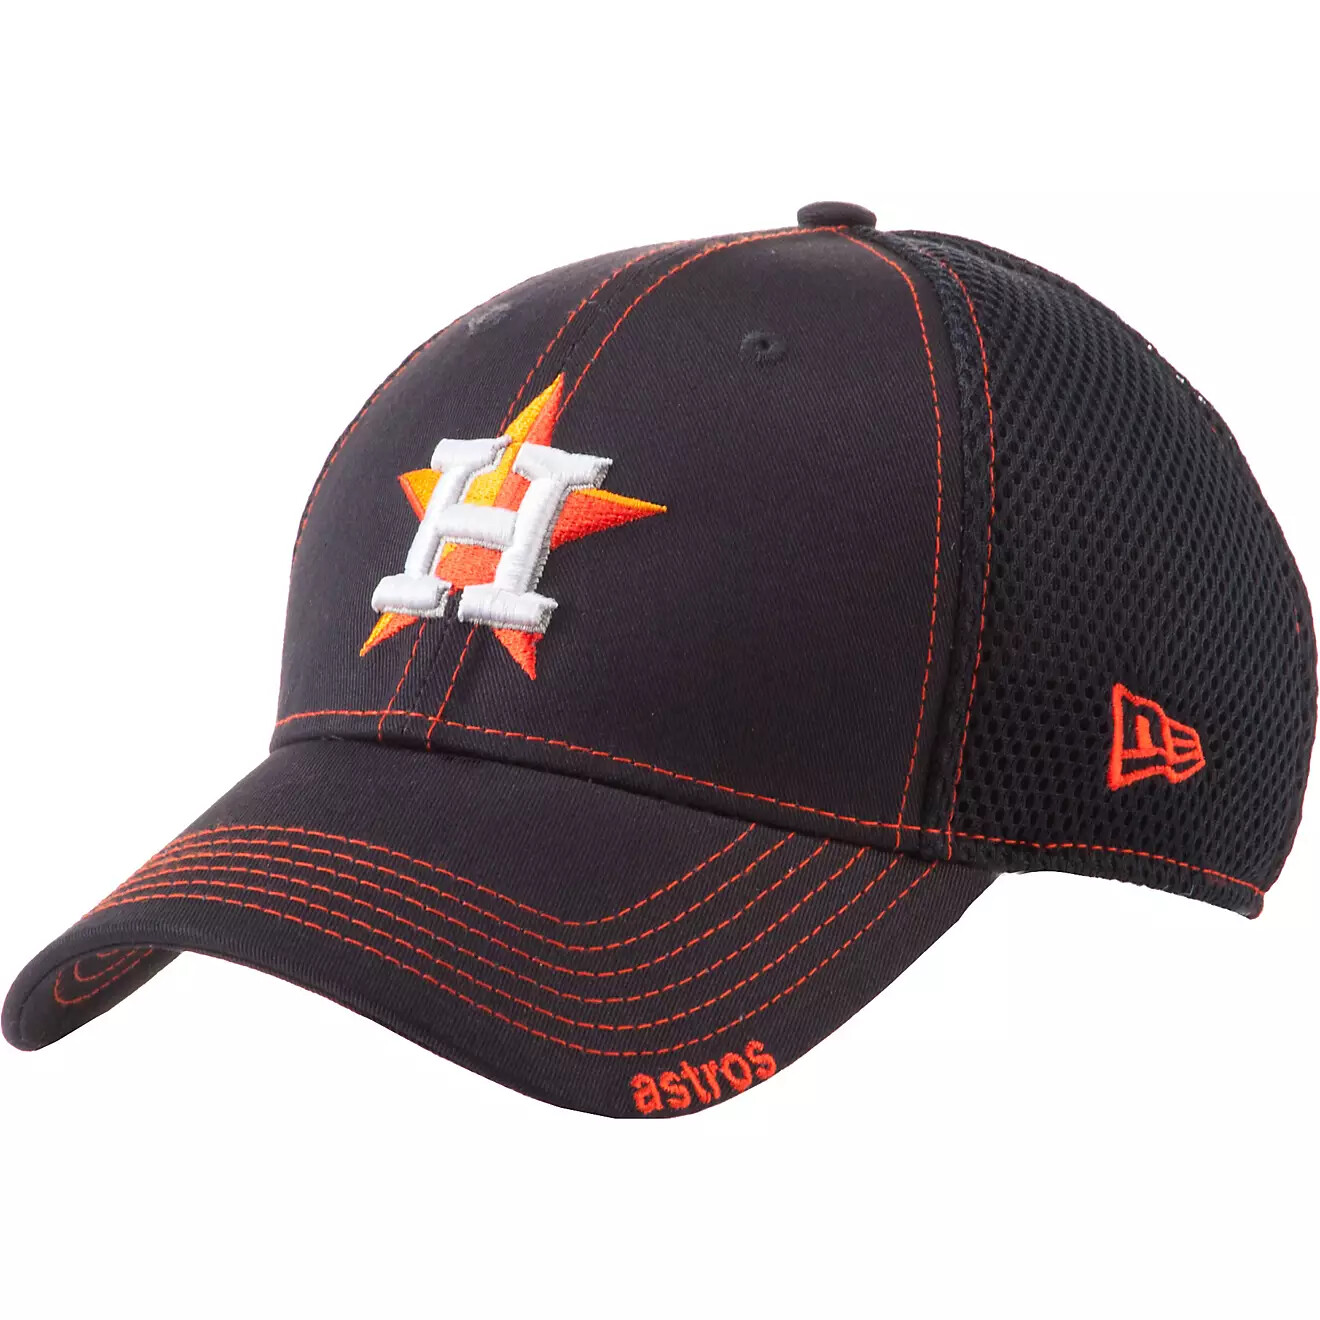 Кепка "MLB Houston Astros Neo Stretch Fit Cap", 39THIRTY, Black/Orange, New Era